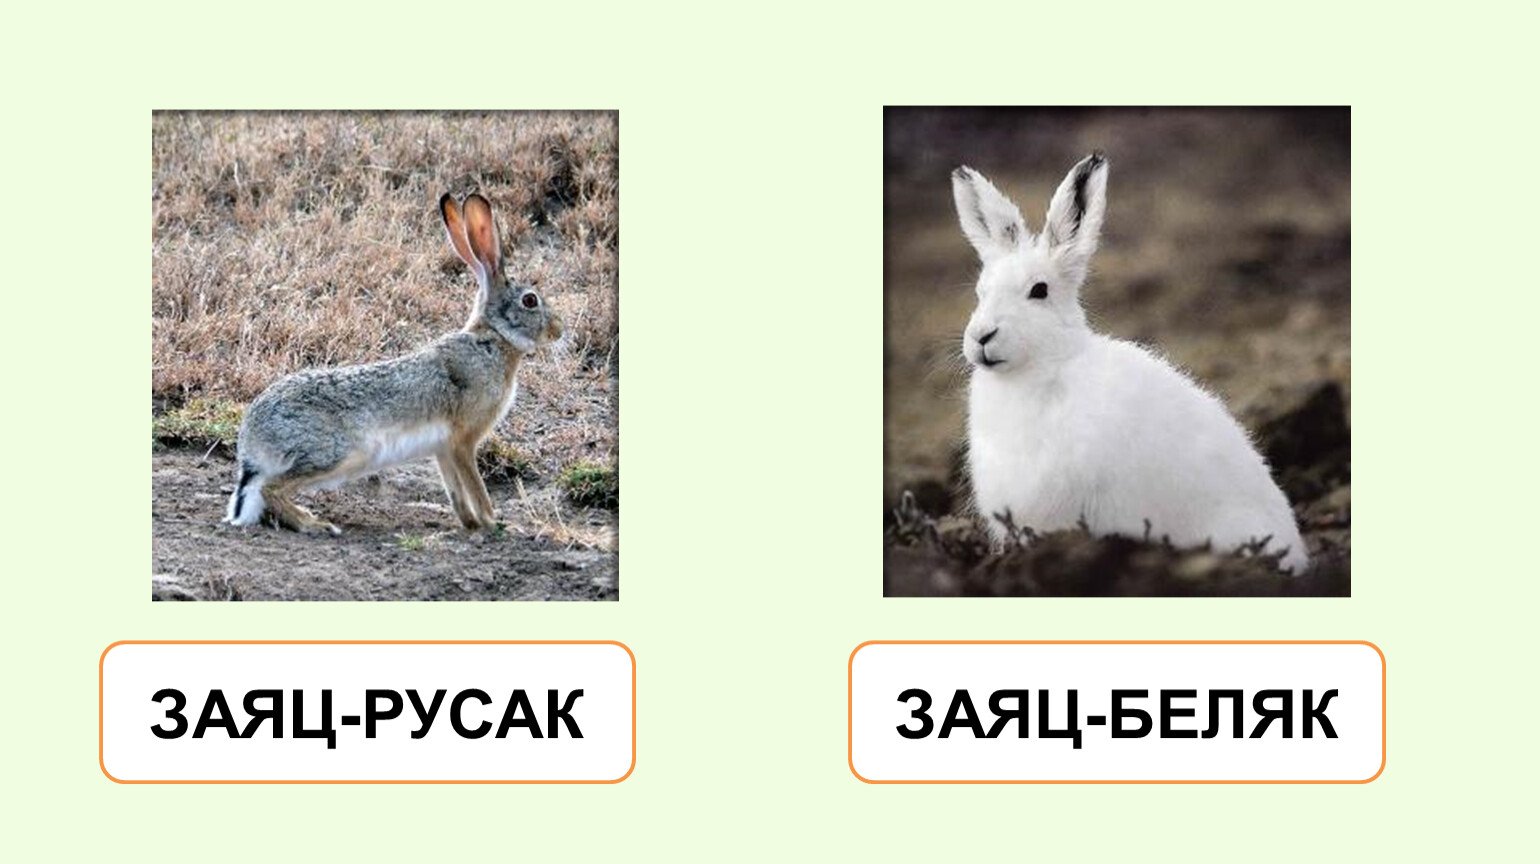 Цвет шерсти зайца. Заяц Беляк и заяц Русак. Русак заяц Русак. Заяц Беляк и Русак фото. Заяц-Беляк и заяц-Русак сходства и различия.